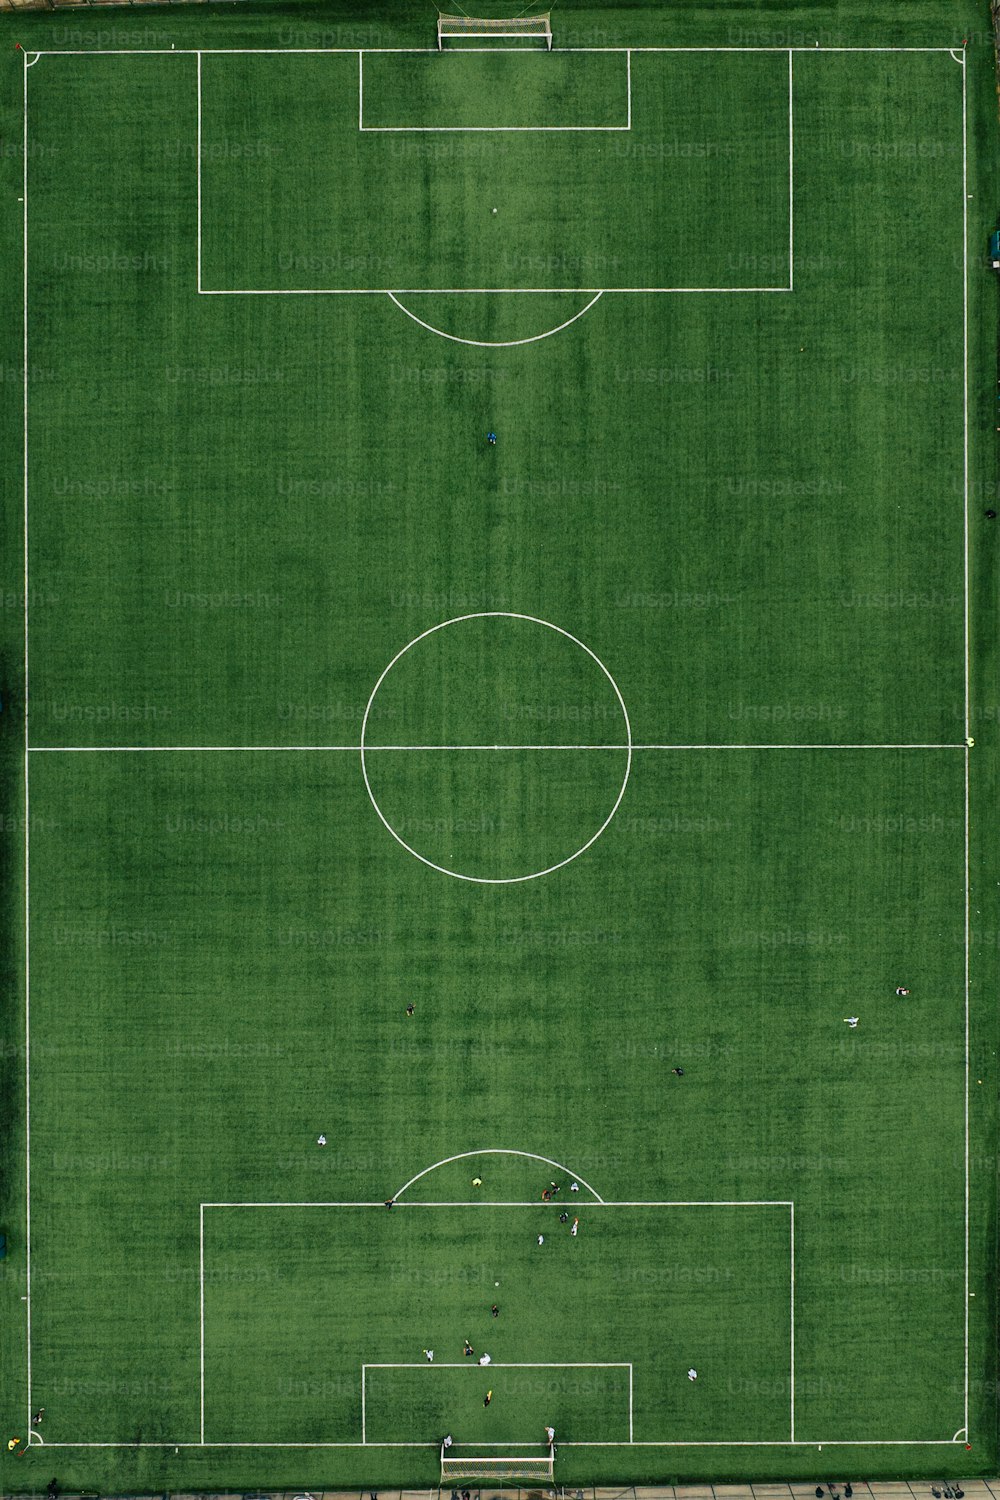 Una vista aérea de un campo de fútbol desde arriba